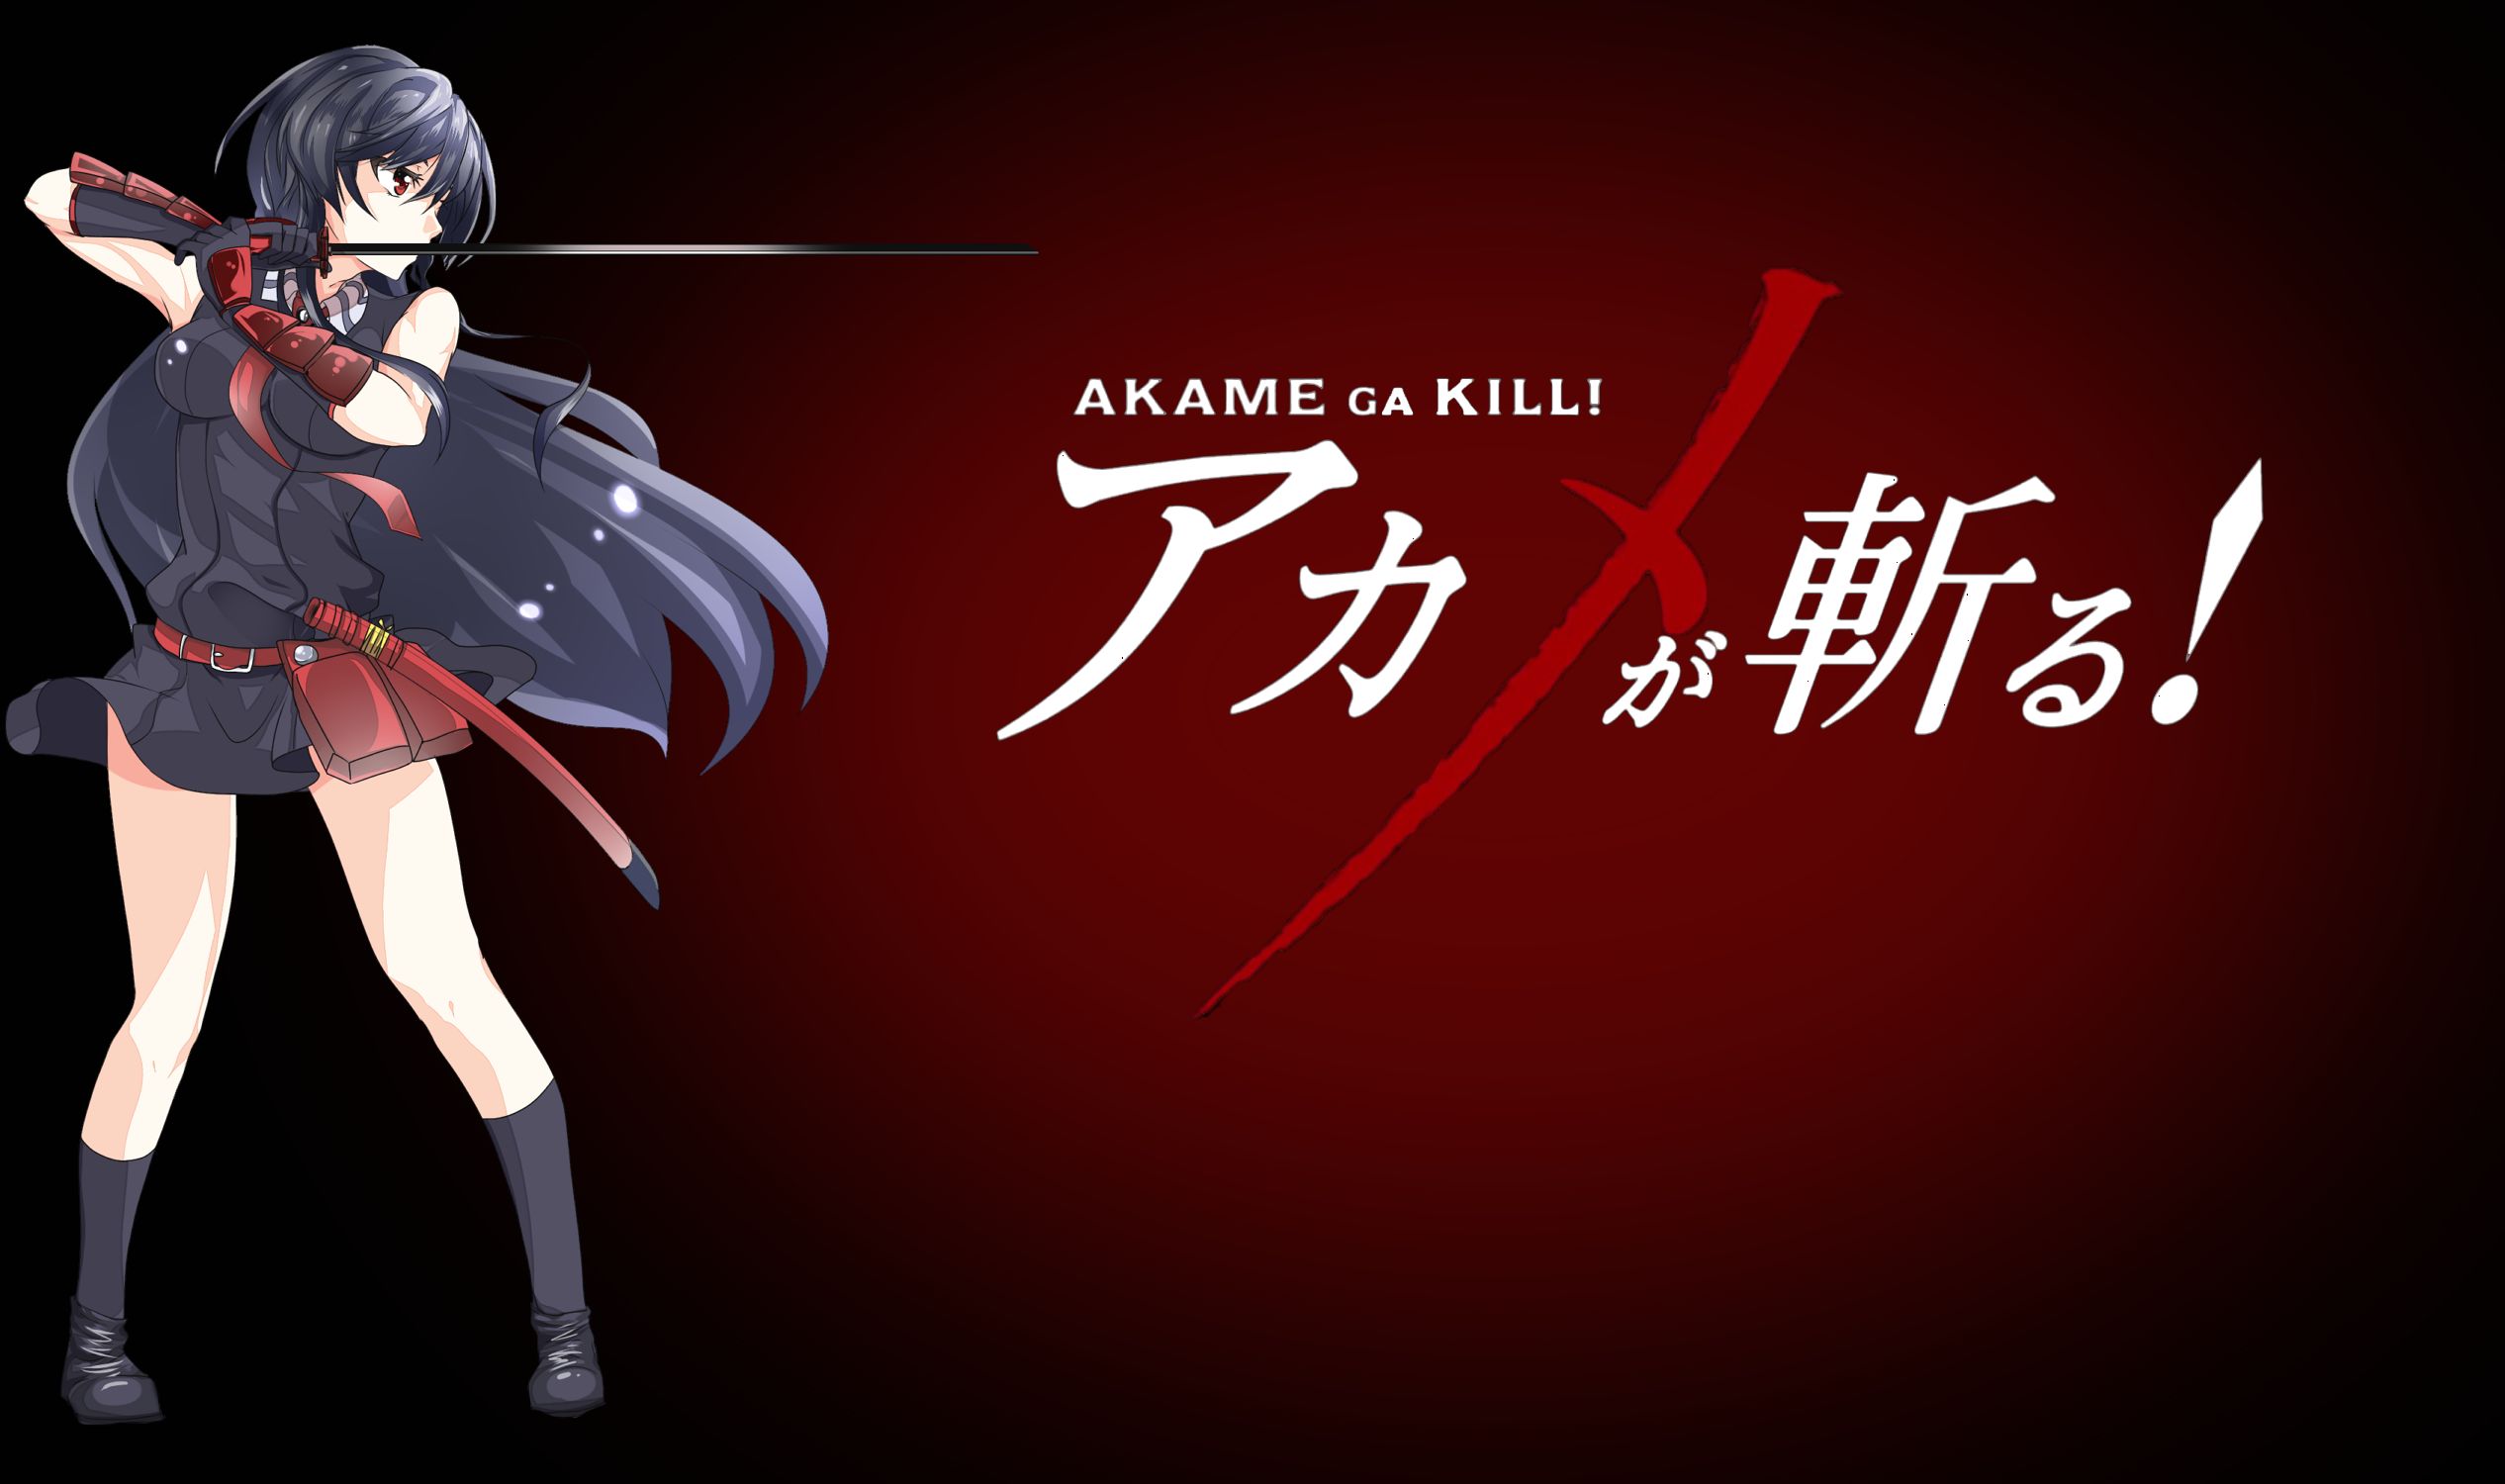 Скачать обои бесплатно Аниме, Акаме (Убийца Акаме!), Убийца Акаме! картинка на рабочий стол ПК